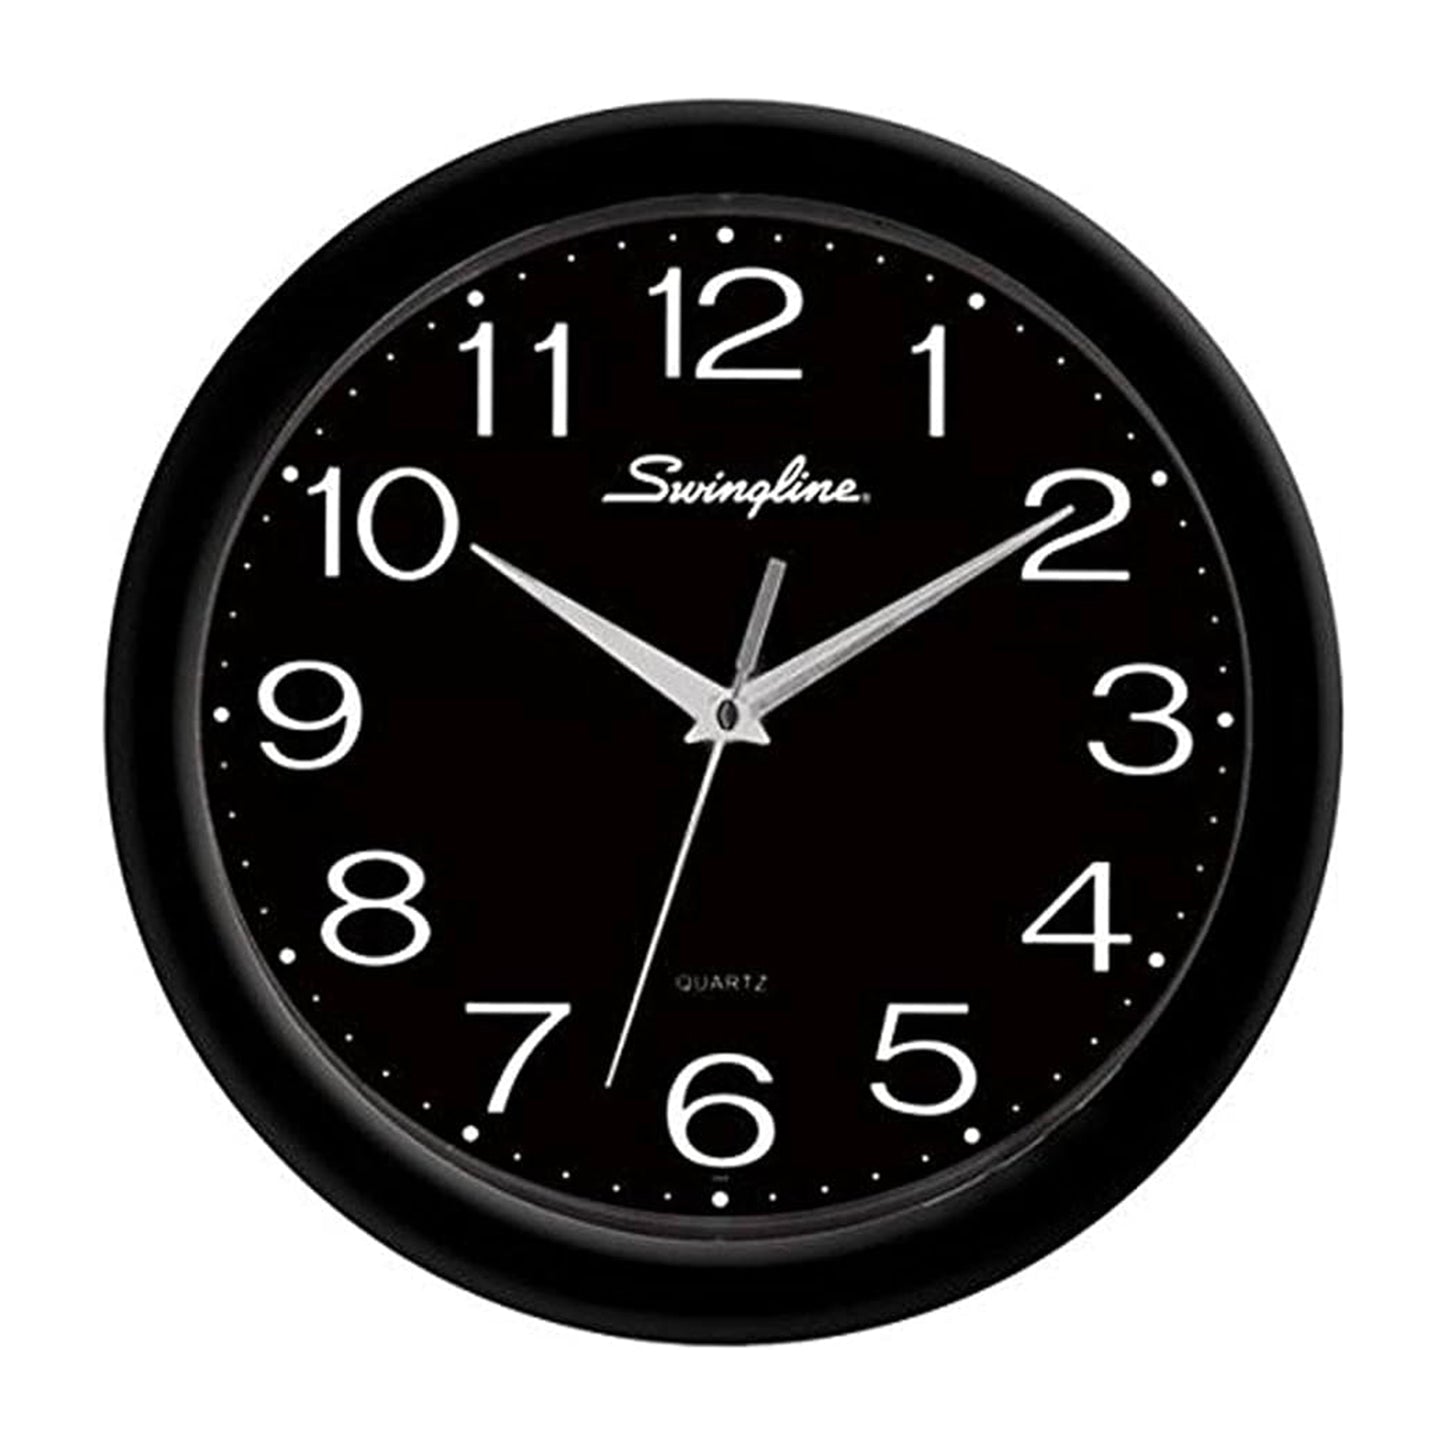 Swingline Wall Clock 12" - 12 Hour